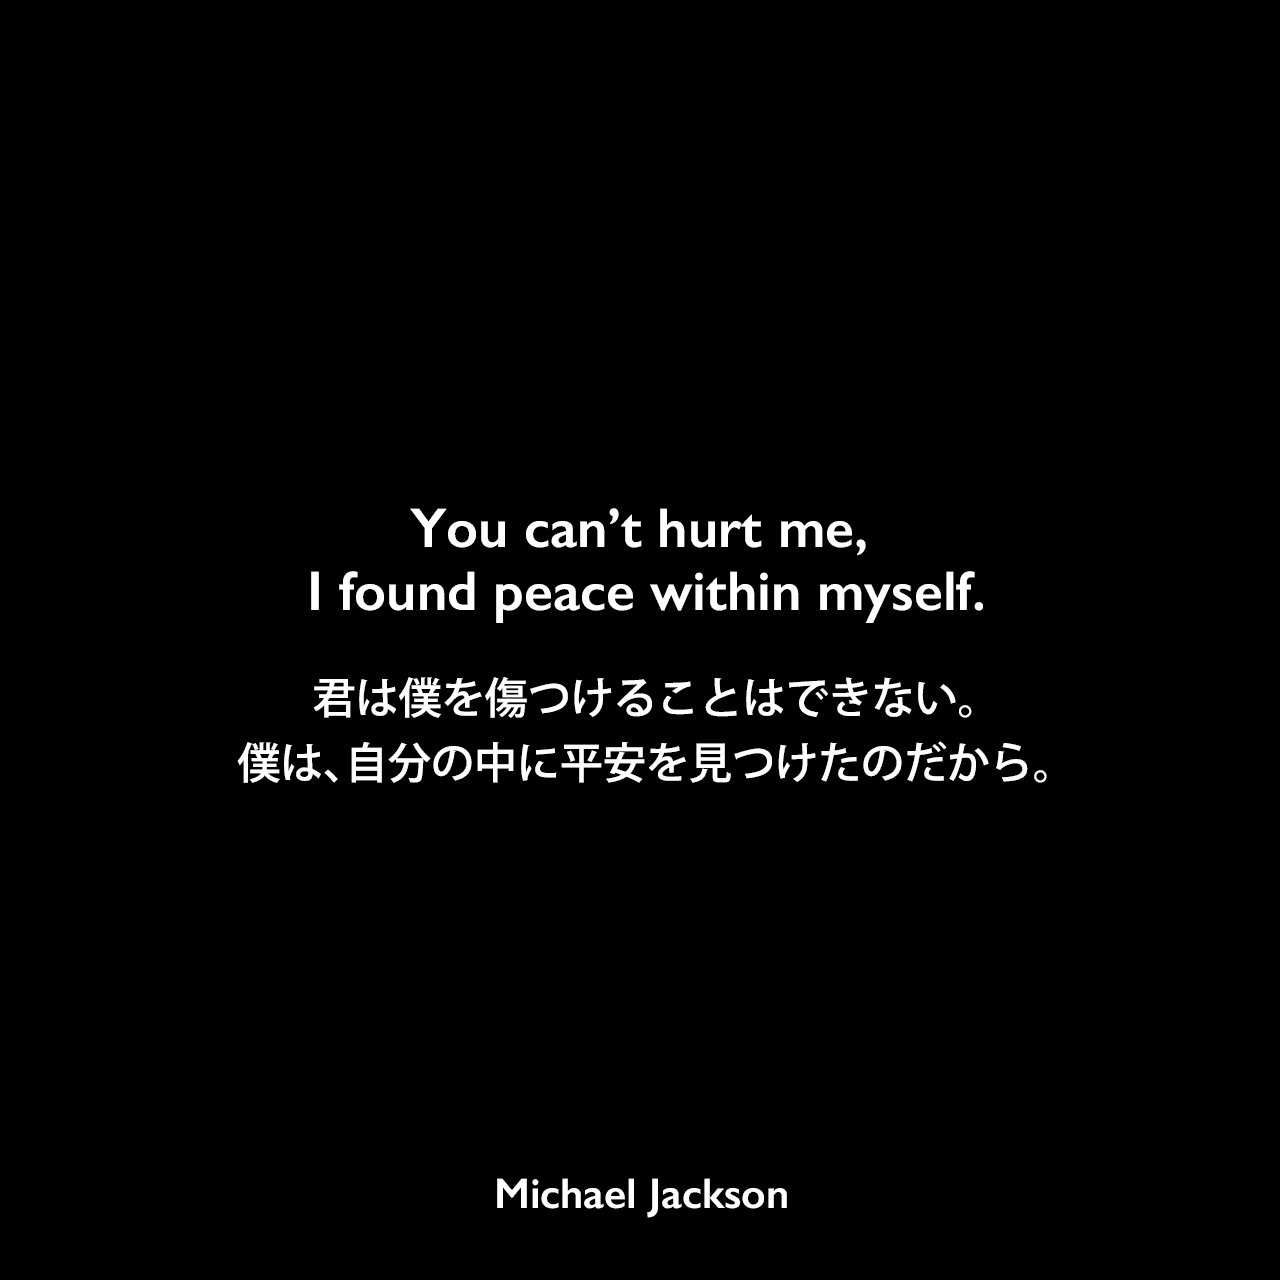 You can’t hurt me, I found peace within myself.君は僕を傷つけることはできない。僕は、自分の中に平安を見つけたのだから。Michael Jackson